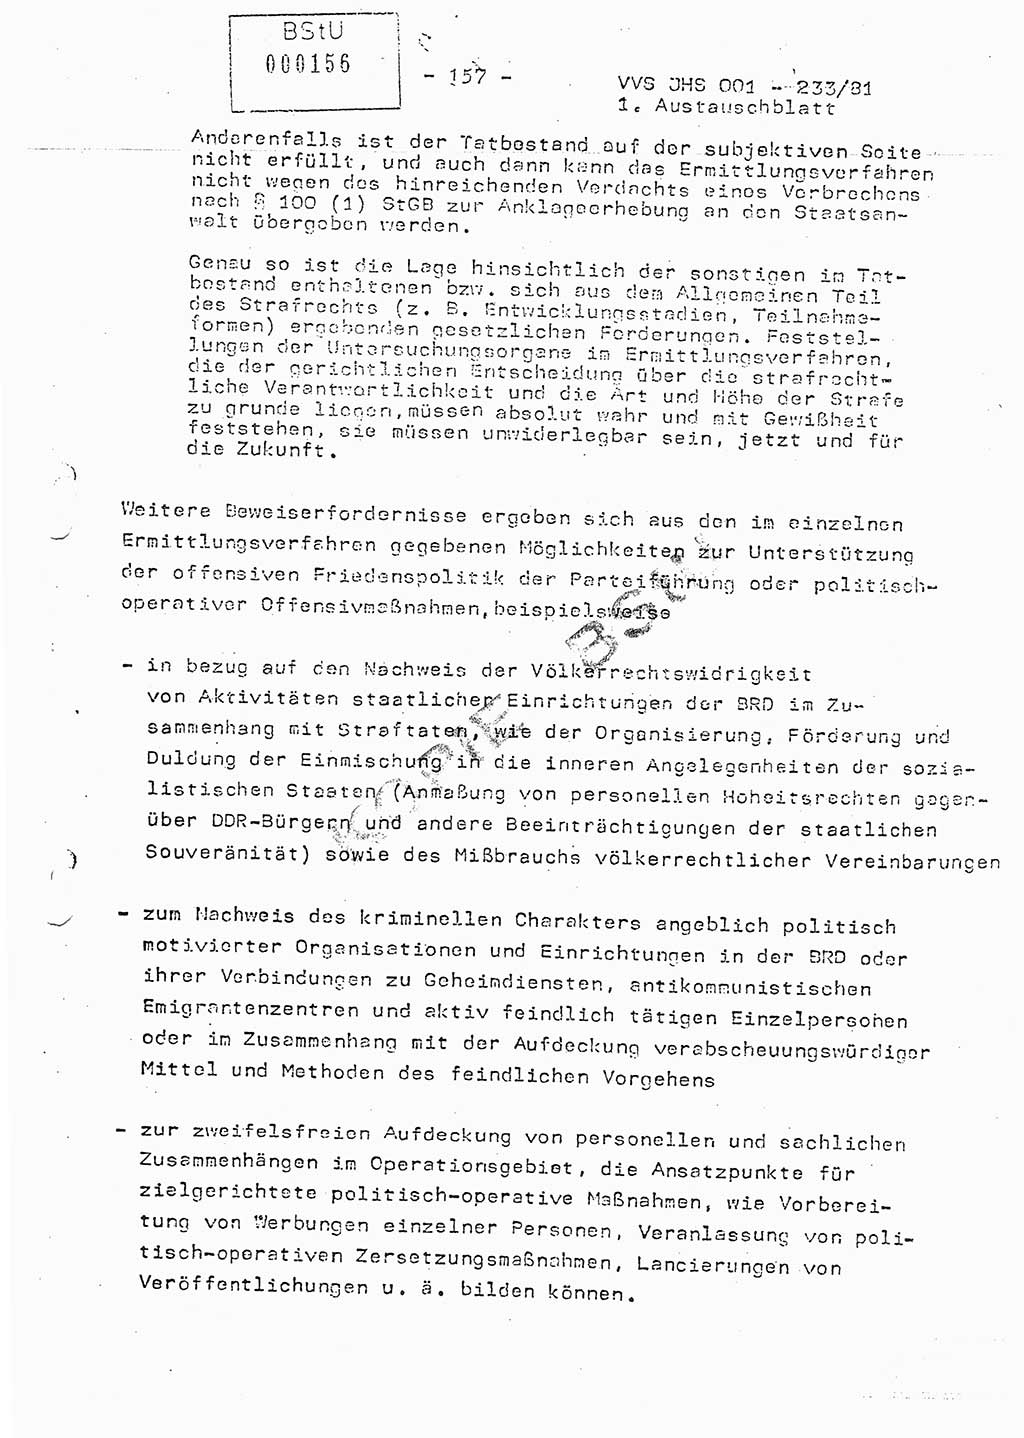 Dissertation Oberstleutnant Horst Zank (JHS), Oberstleutnant Dr. Karl-Heinz Knoblauch (JHS), Oberstleutnant Gustav-Adolf Kowalewski (HA Ⅸ), Oberstleutnant Wolfgang Plötner (HA Ⅸ), Ministerium für Staatssicherheit (MfS) [Deutsche Demokratische Republik (DDR)], Juristische Hochschule (JHS), Vertrauliche Verschlußsache (VVS) o001-233/81, Potsdam 1981, Blatt 157 (Diss. MfS DDR JHS VVS o001-233/81 1981, Bl. 157)